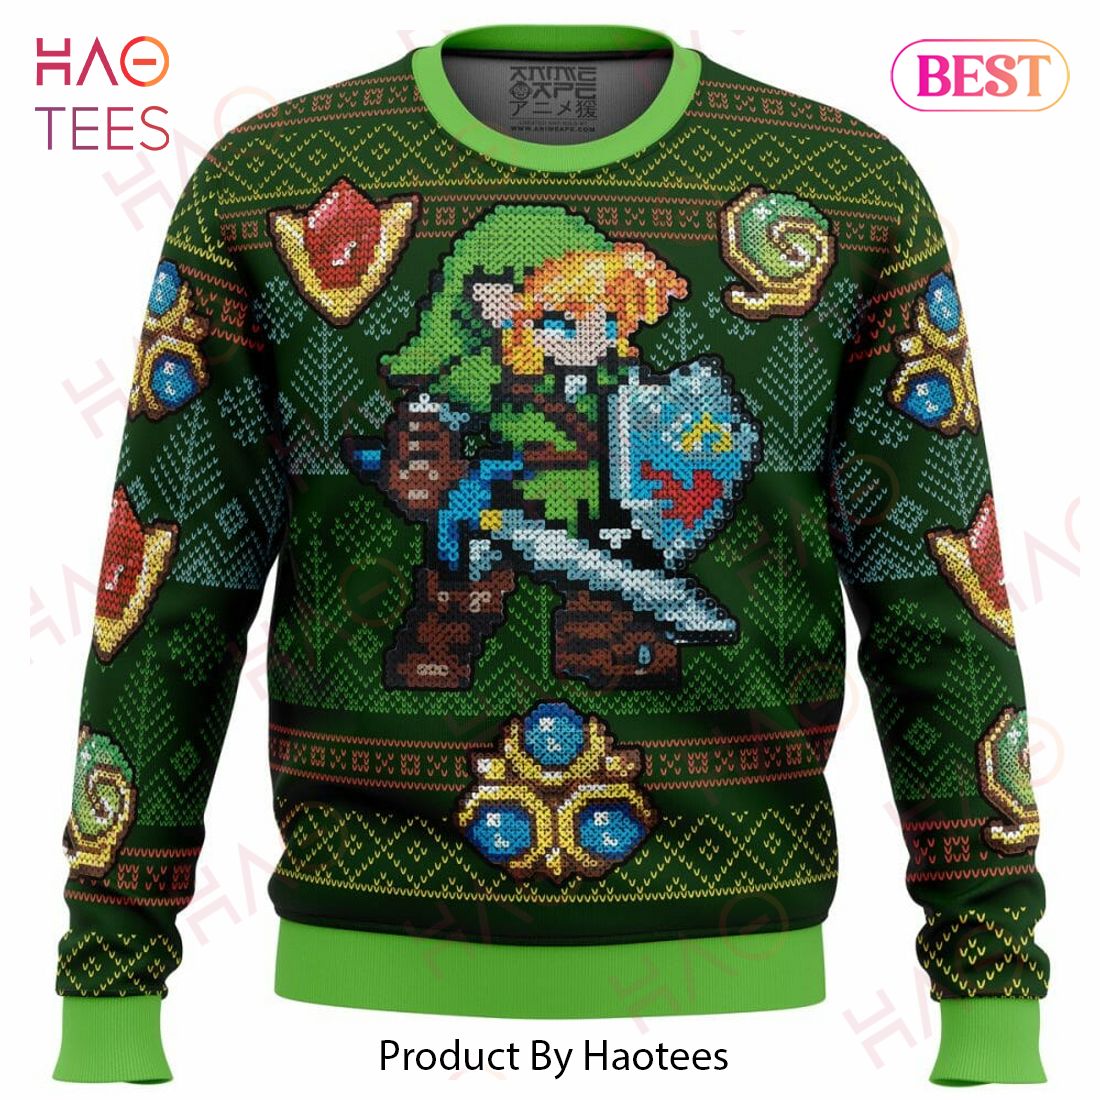 Zelda Link Green Ugly Christmas Sweater